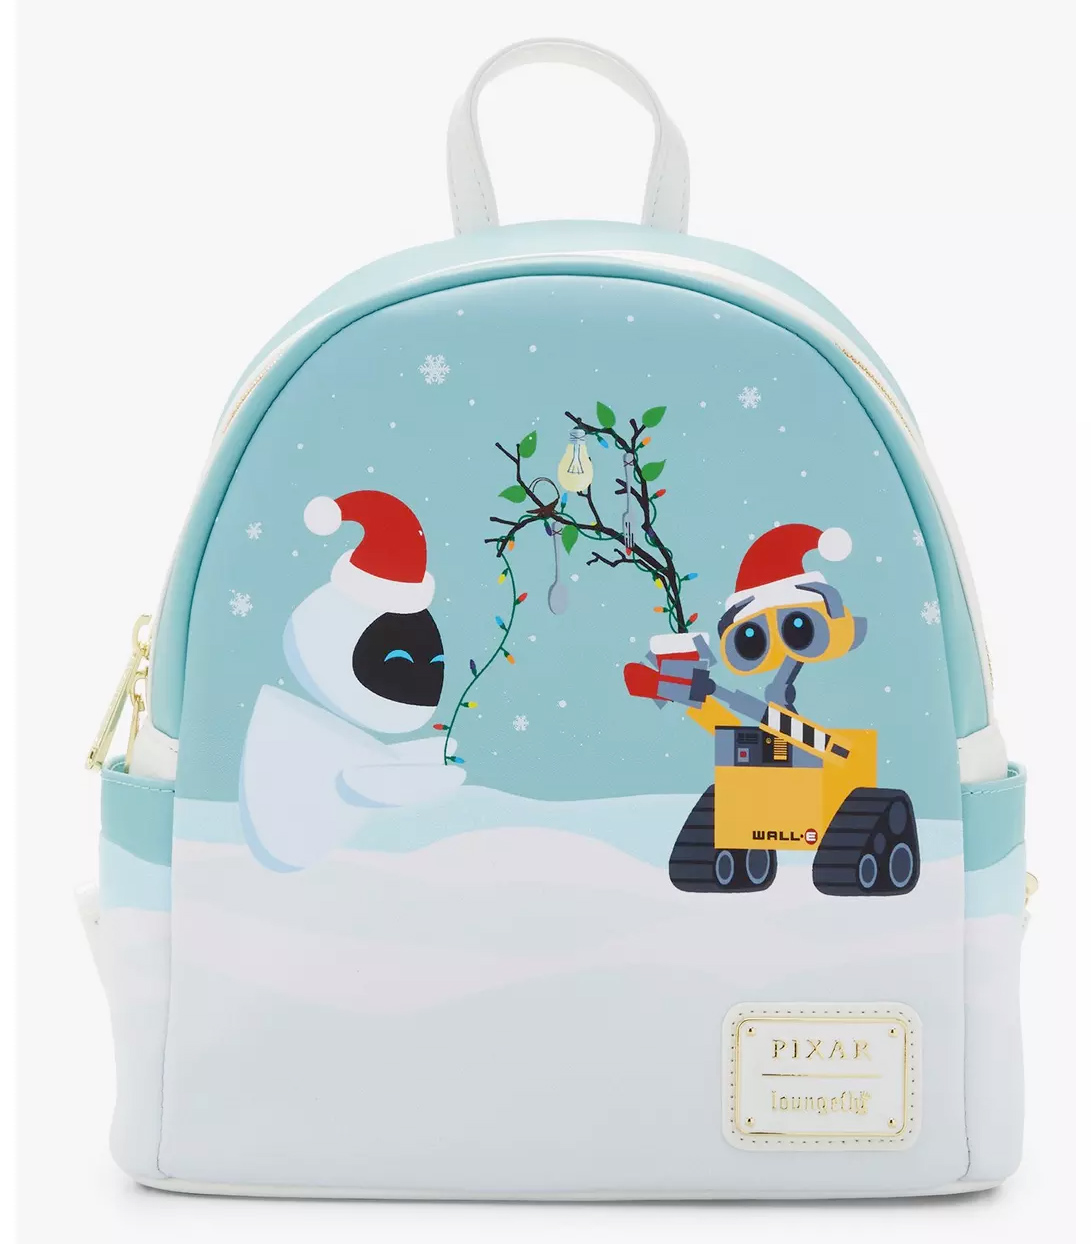 EVE & WALL-E Mini-Backpack with LED-lit Christmas Tree